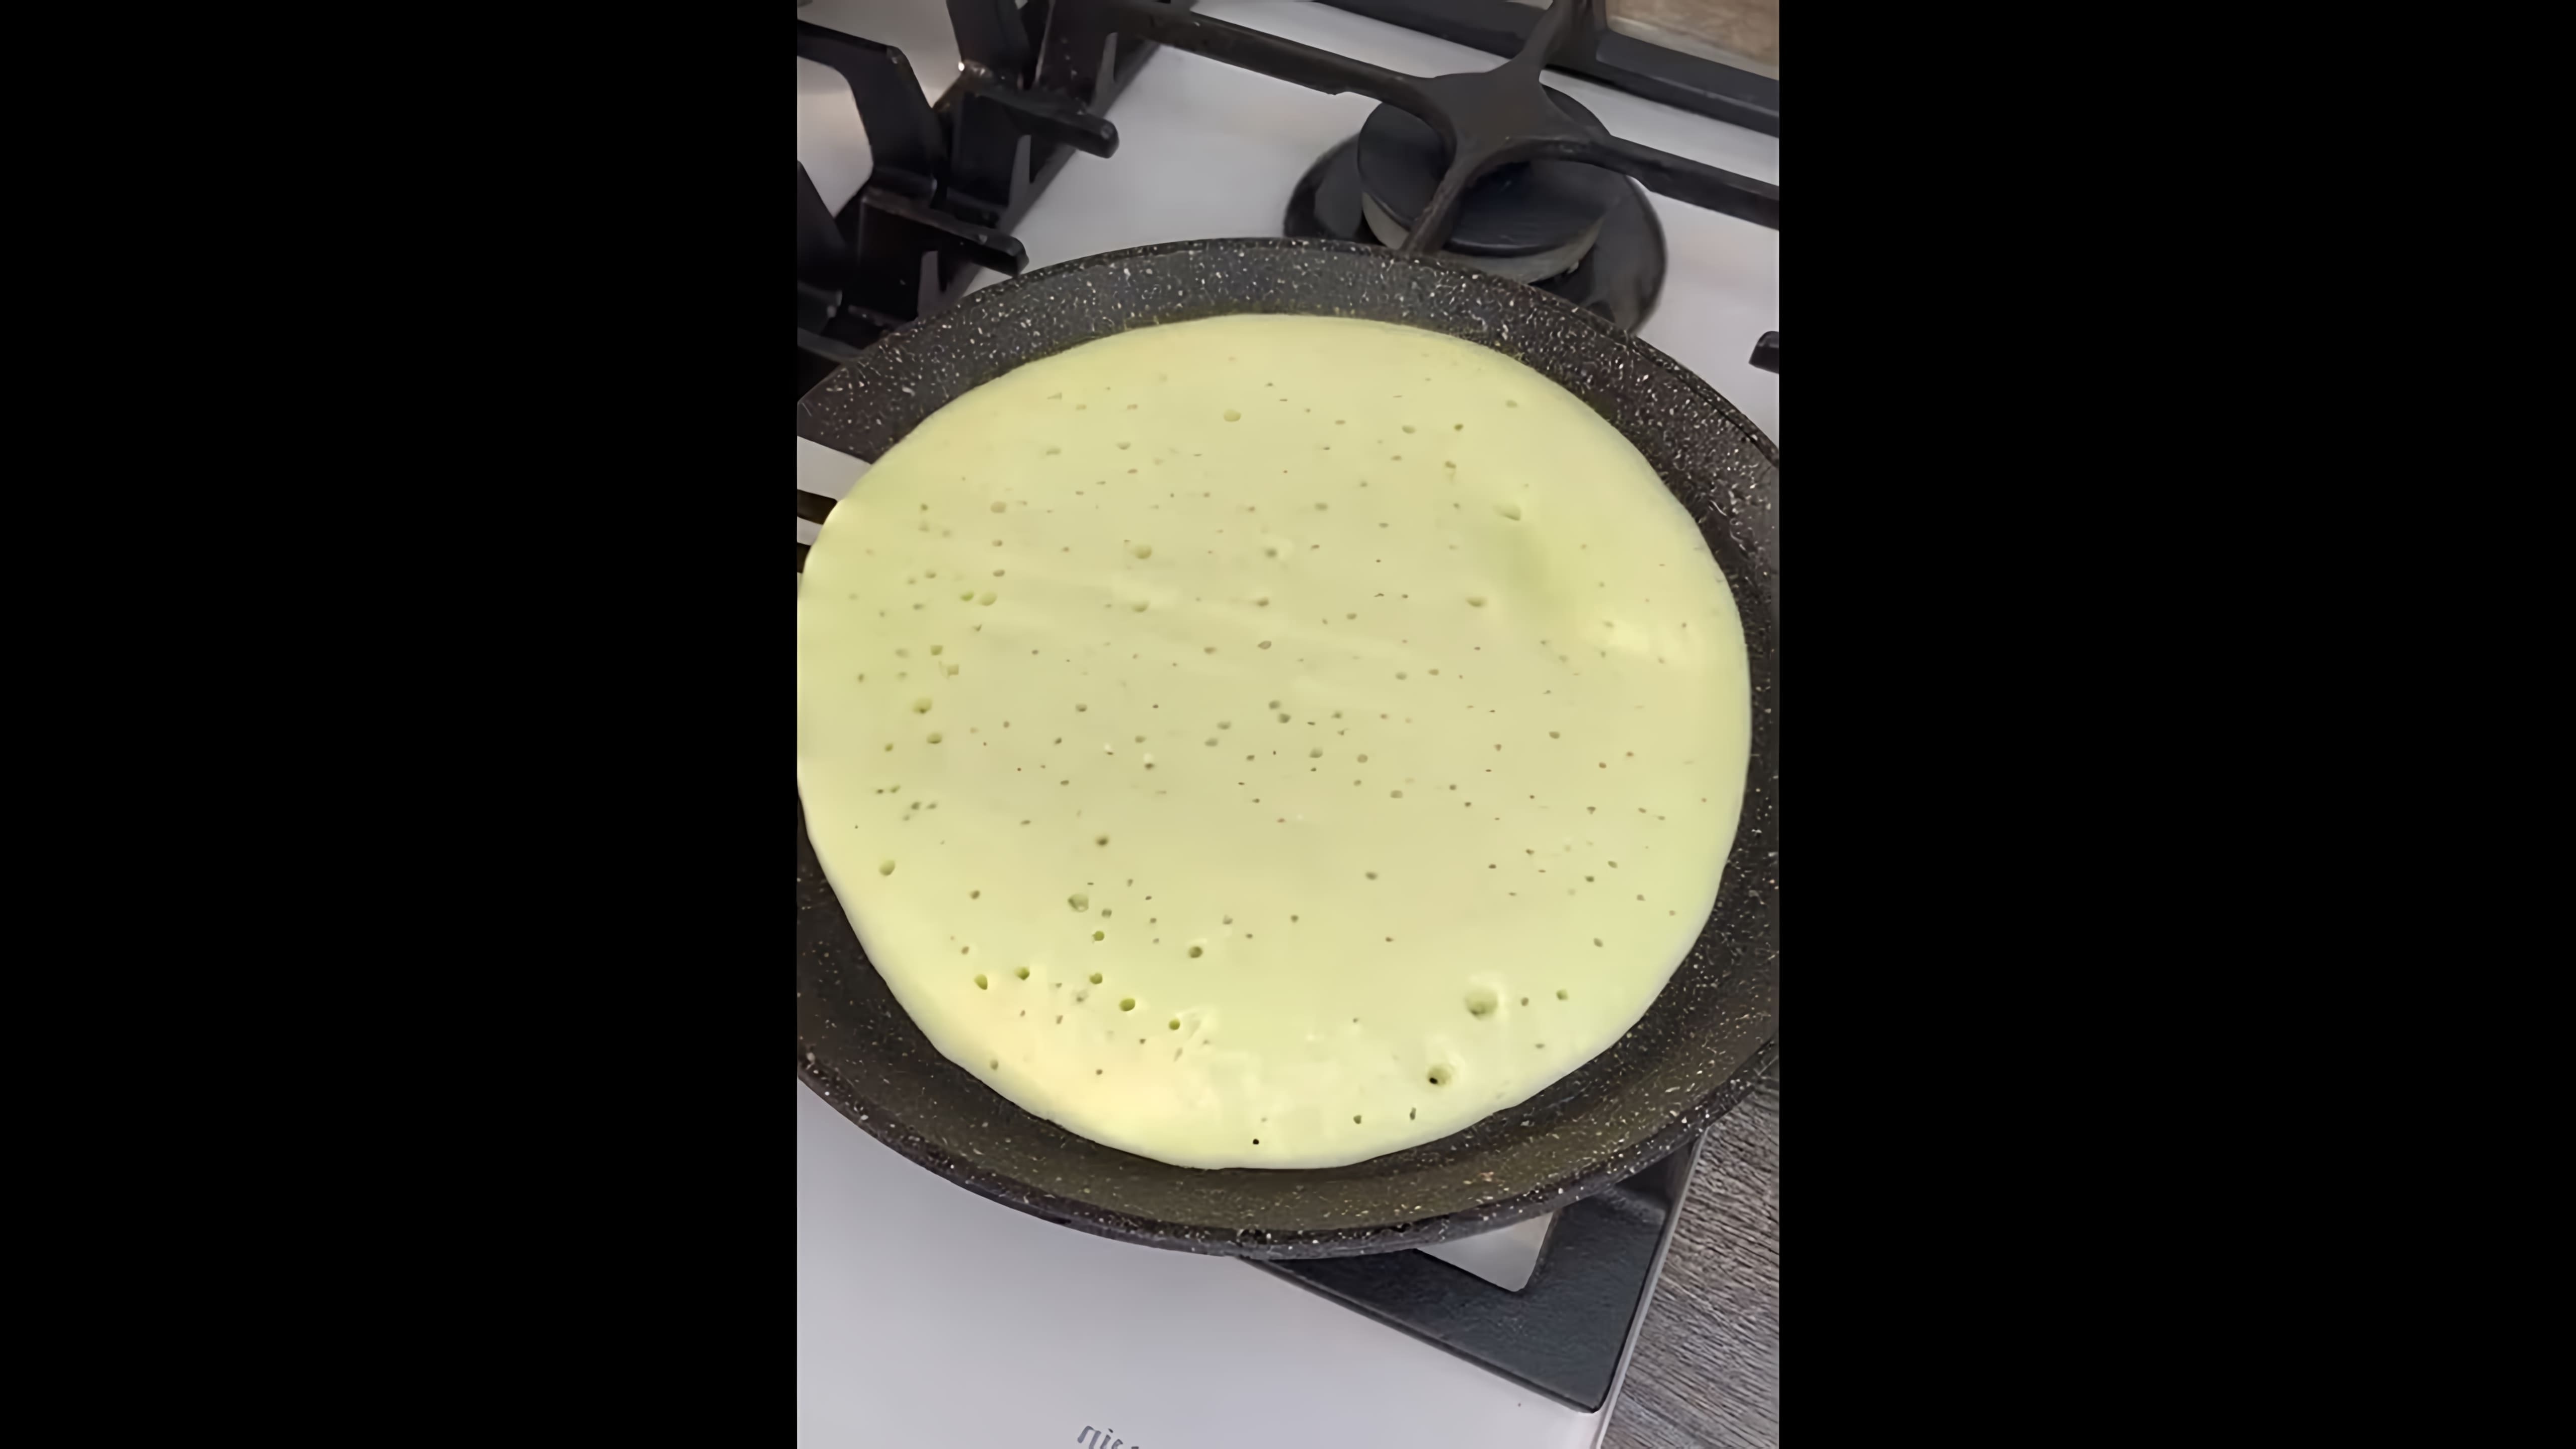 В этом видео демонстрируется процесс приготовления пиццы на заливном тесте